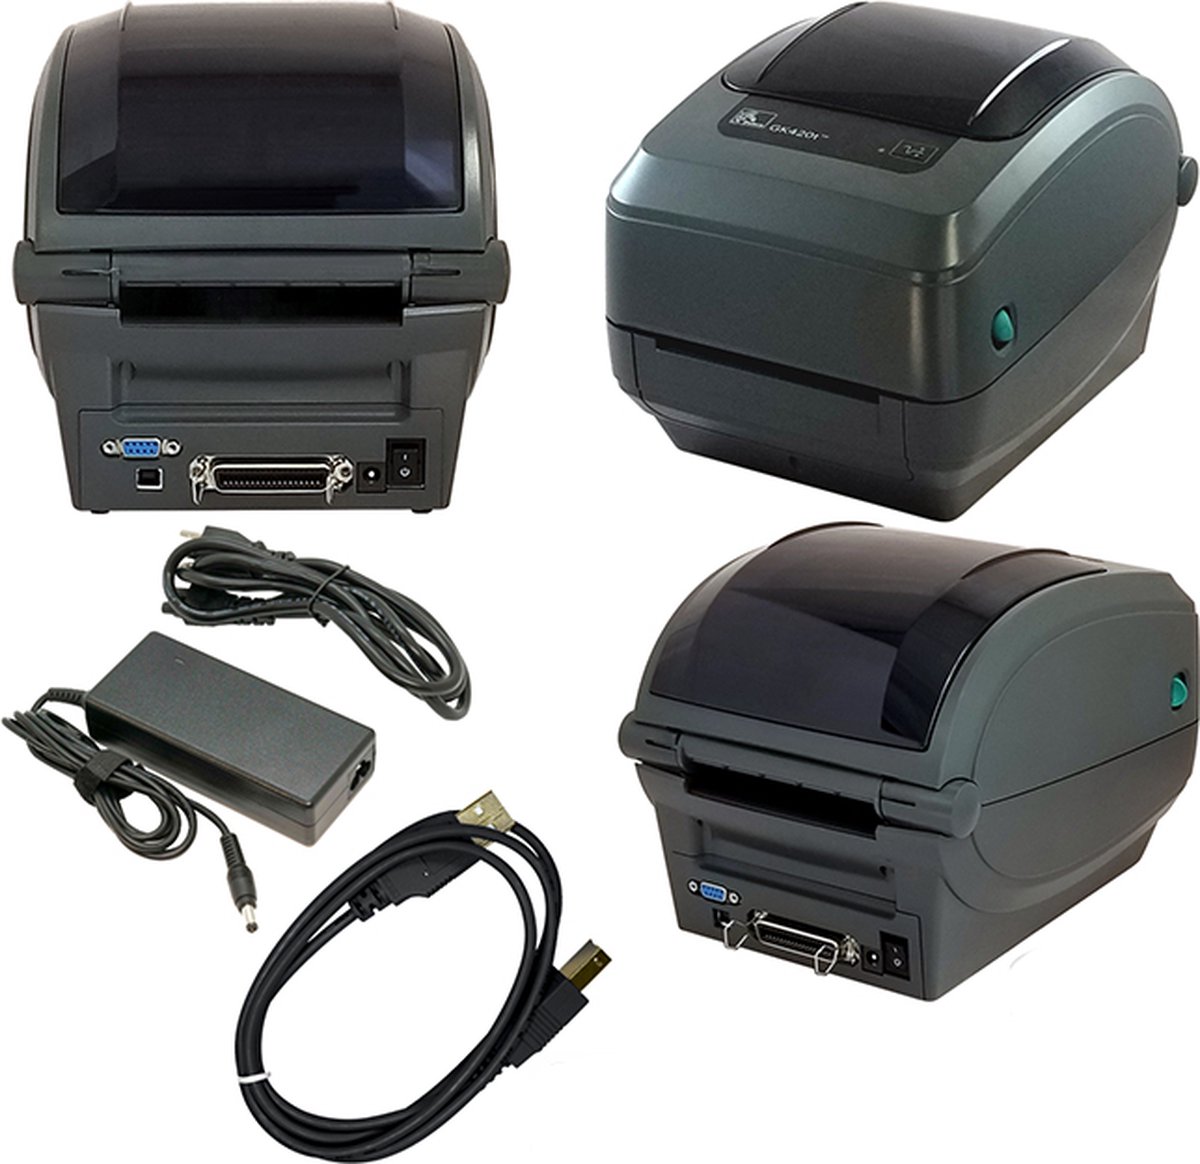 Zebra GK420t rev2 Label printer Thermal transfer 203 x 203 dpi Max. label width: 110 mm USB, LAN